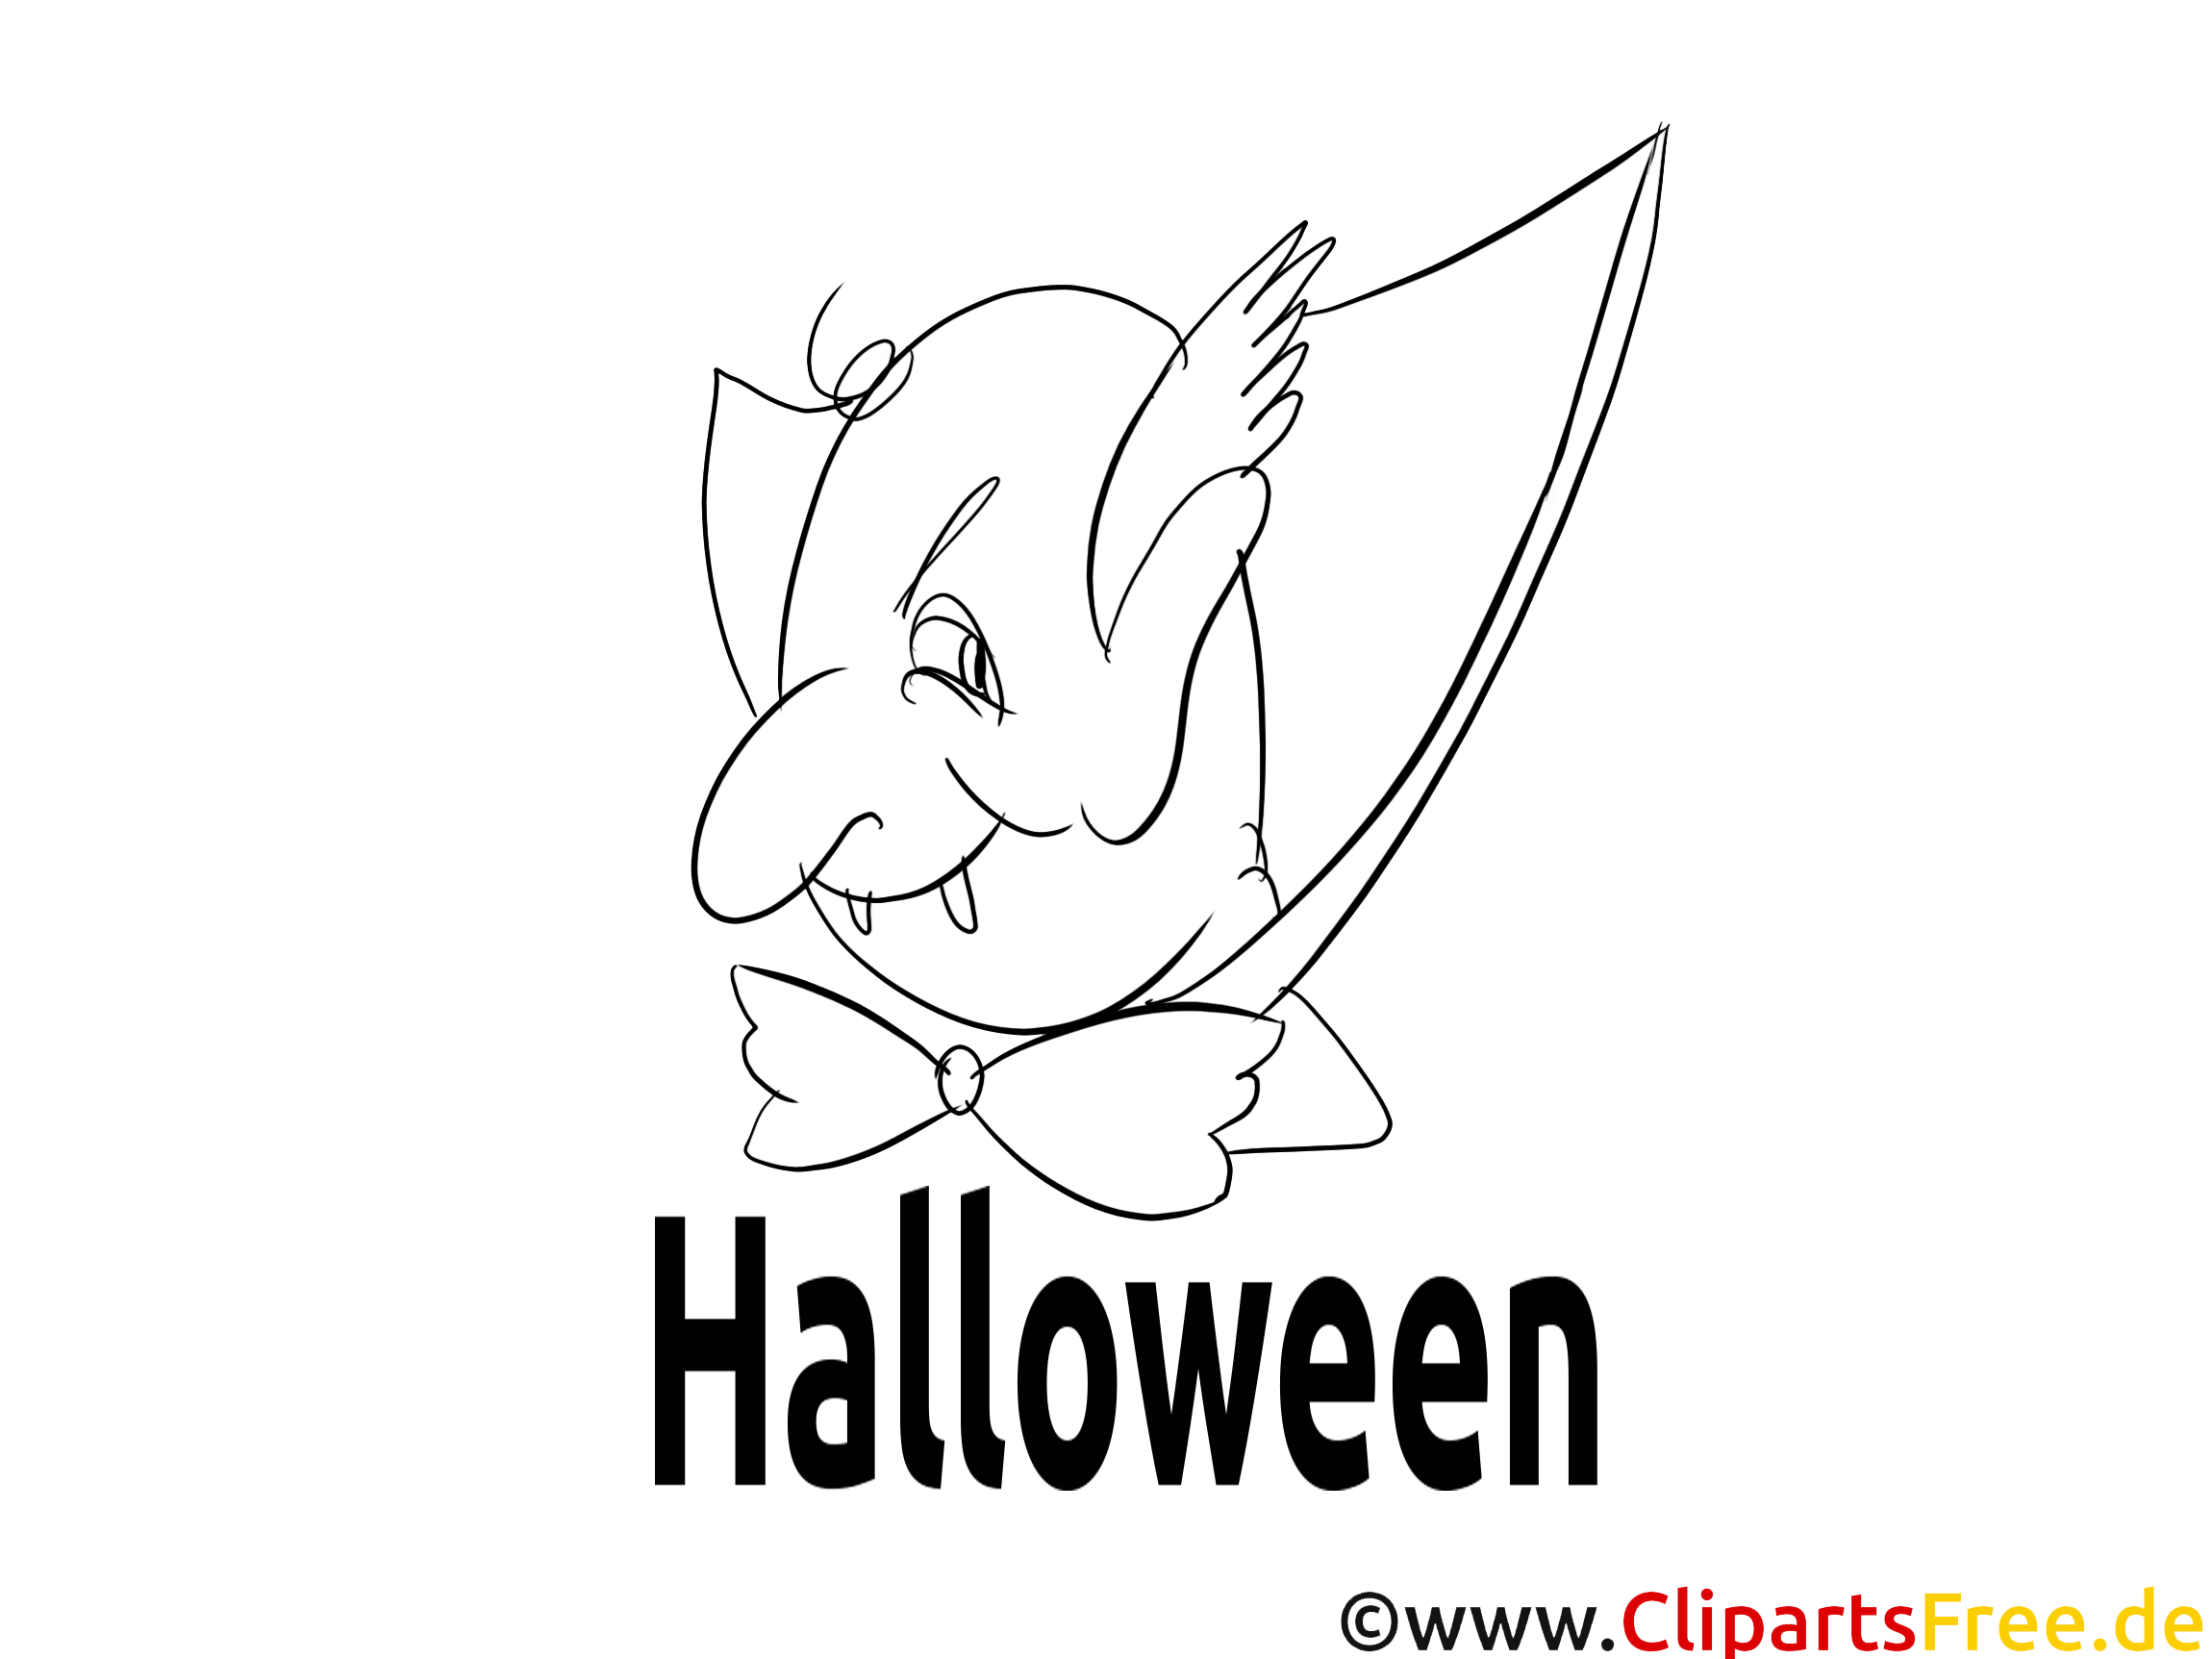 Vampire dessin – Halloween gratuits à imprimer